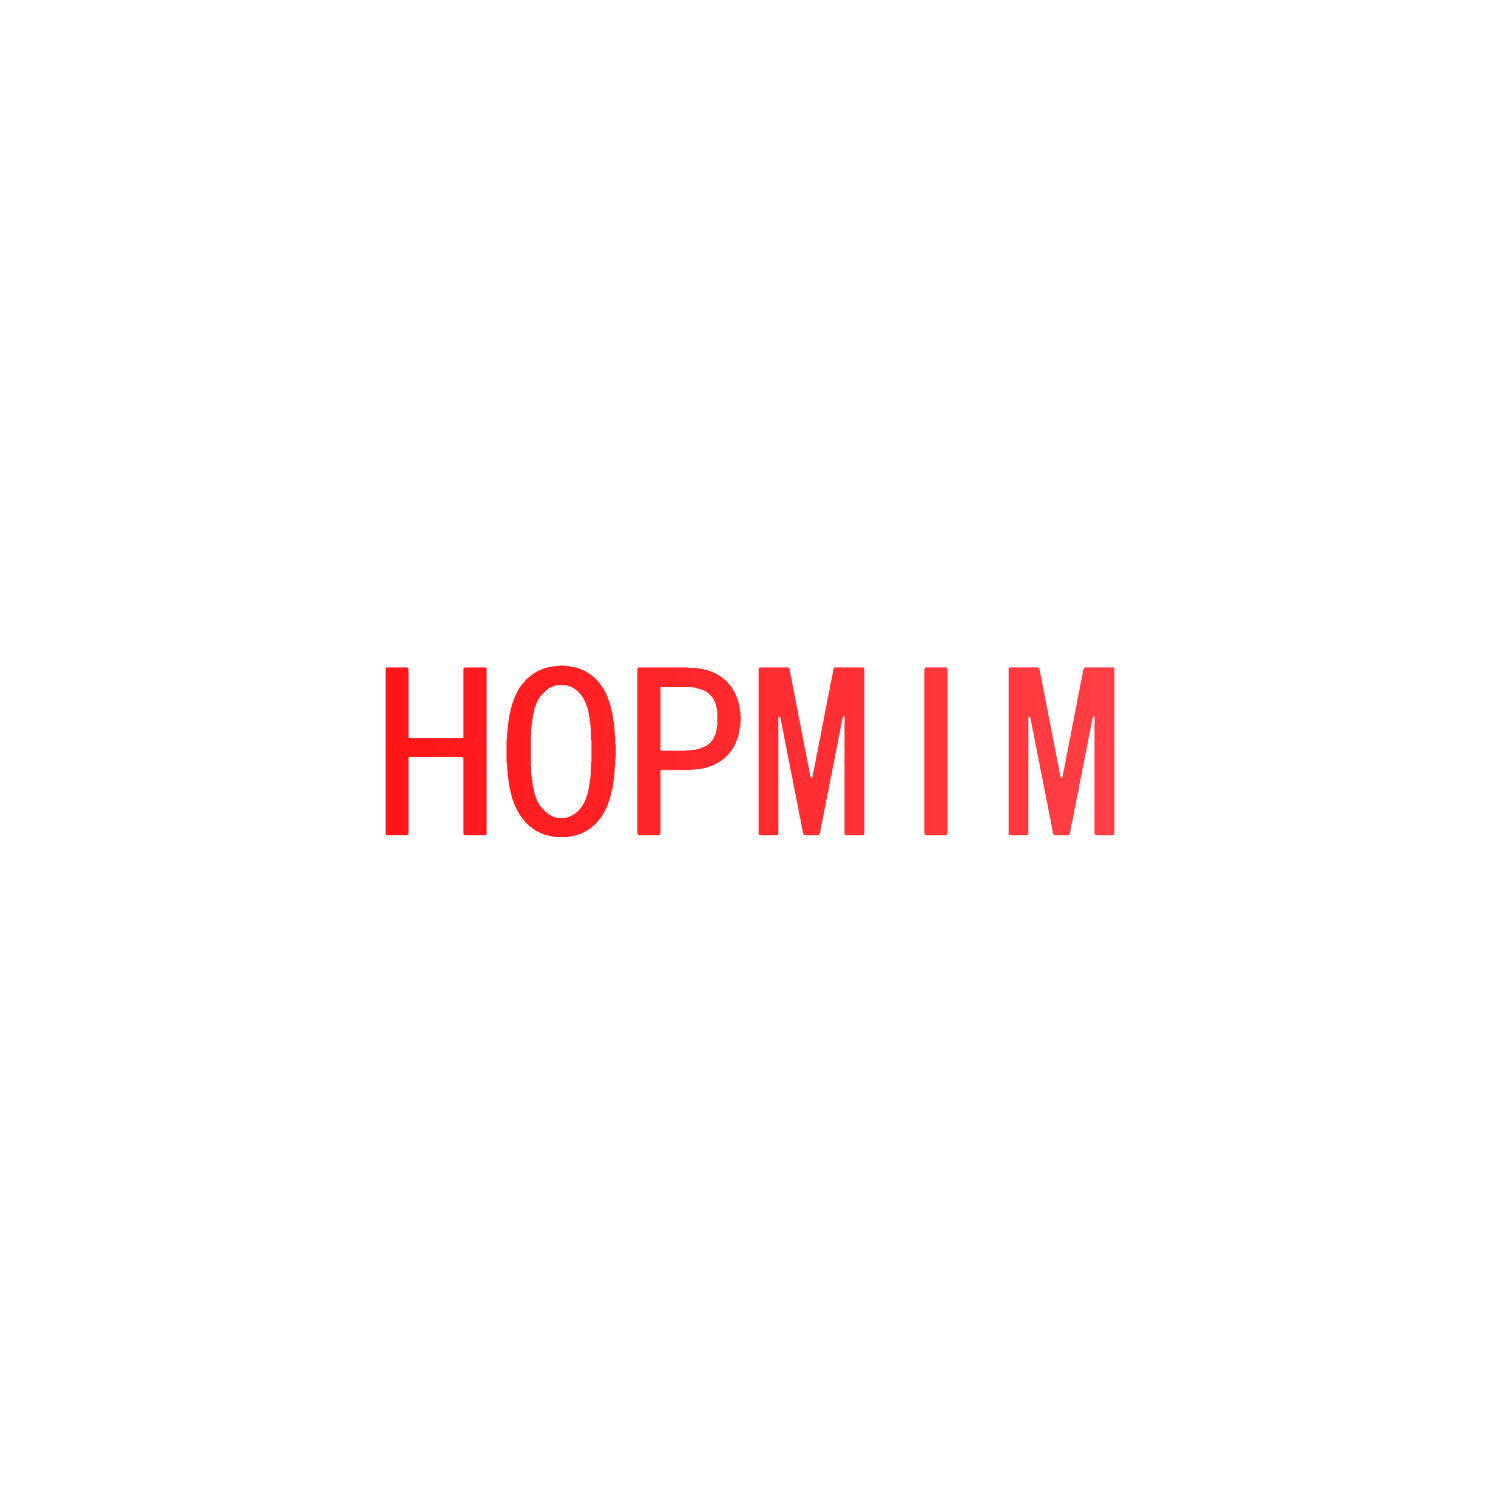 HOPMIM